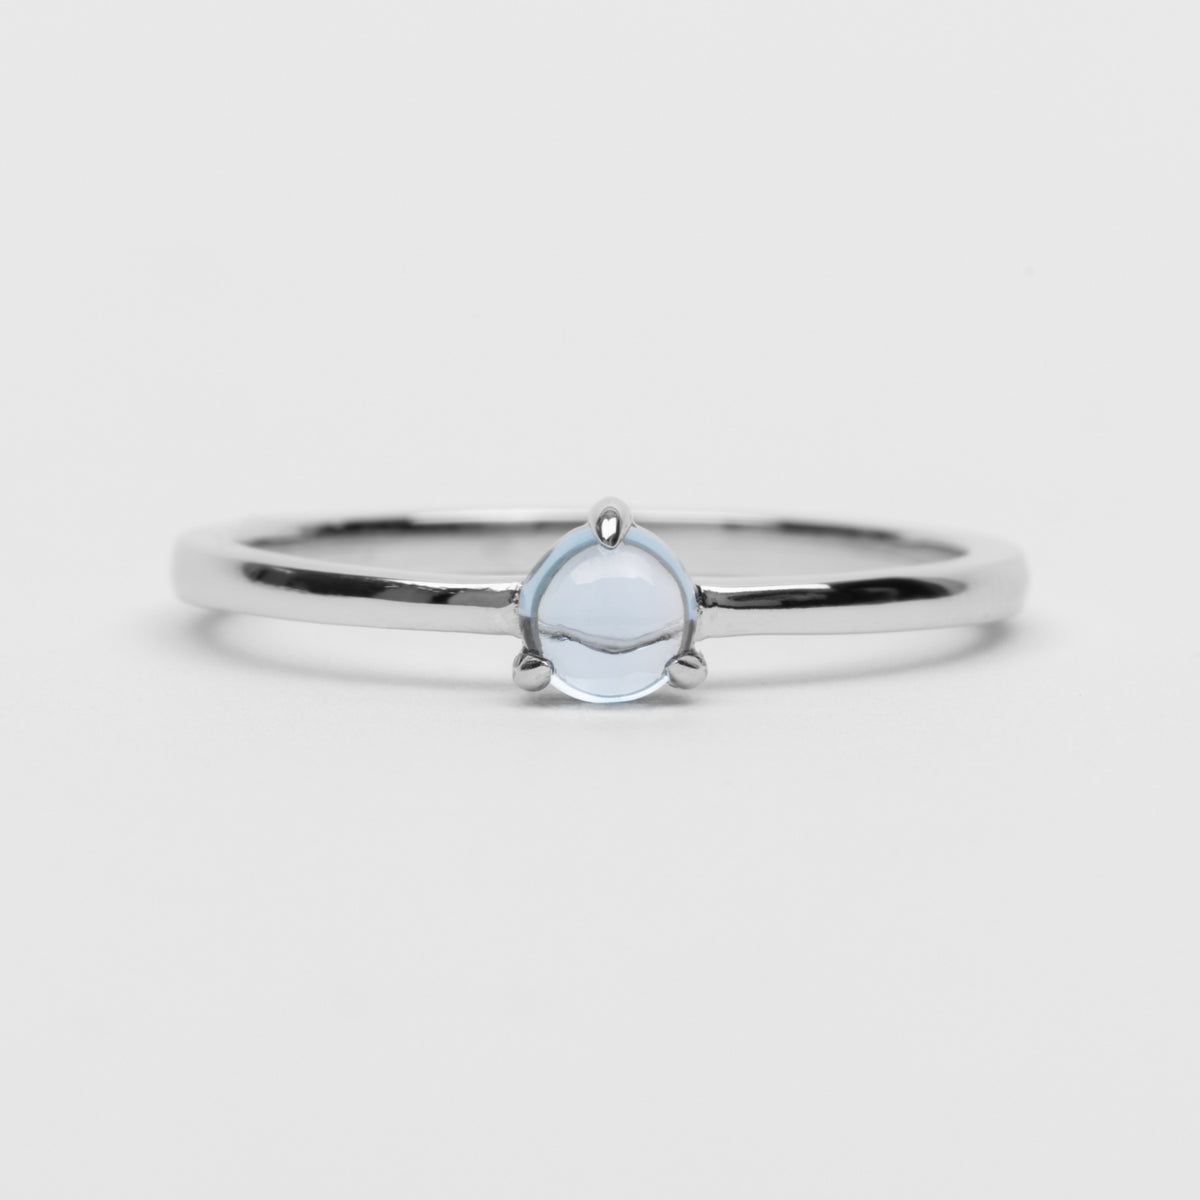 Orb Blue Topaz Ring